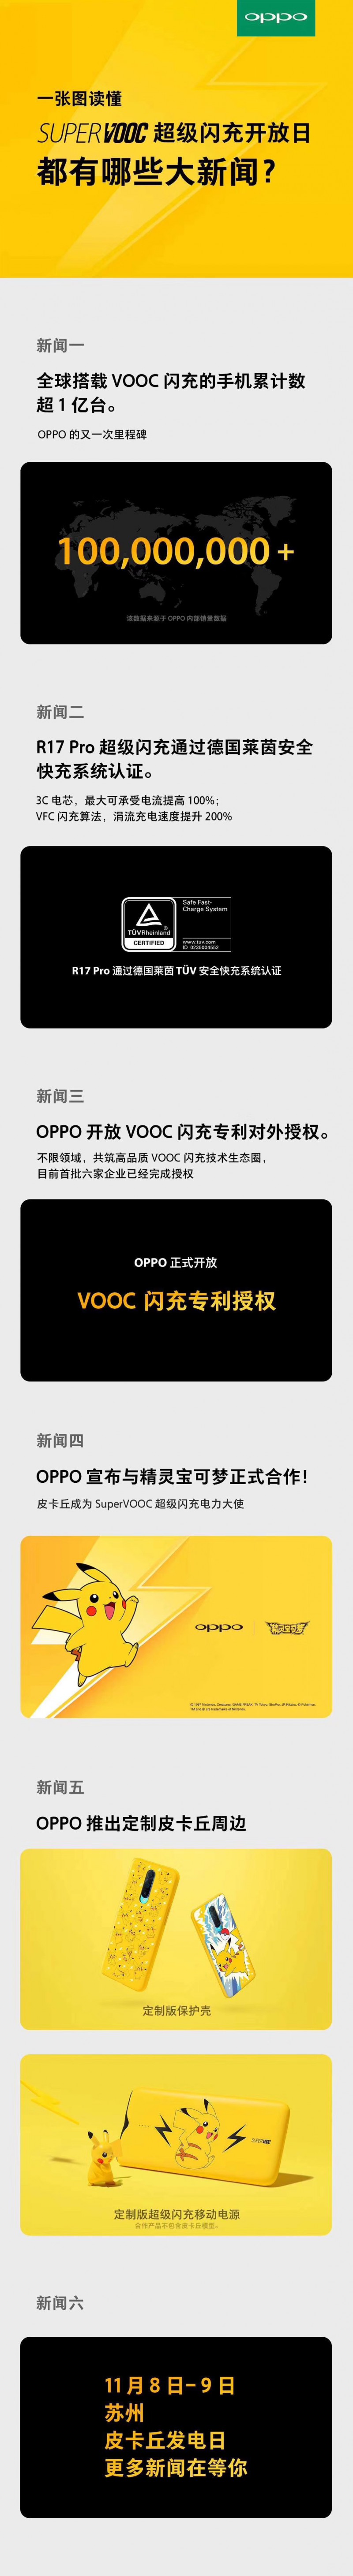 一亿台VOOC闪充手机后，OPPO还有何“电力”计划？